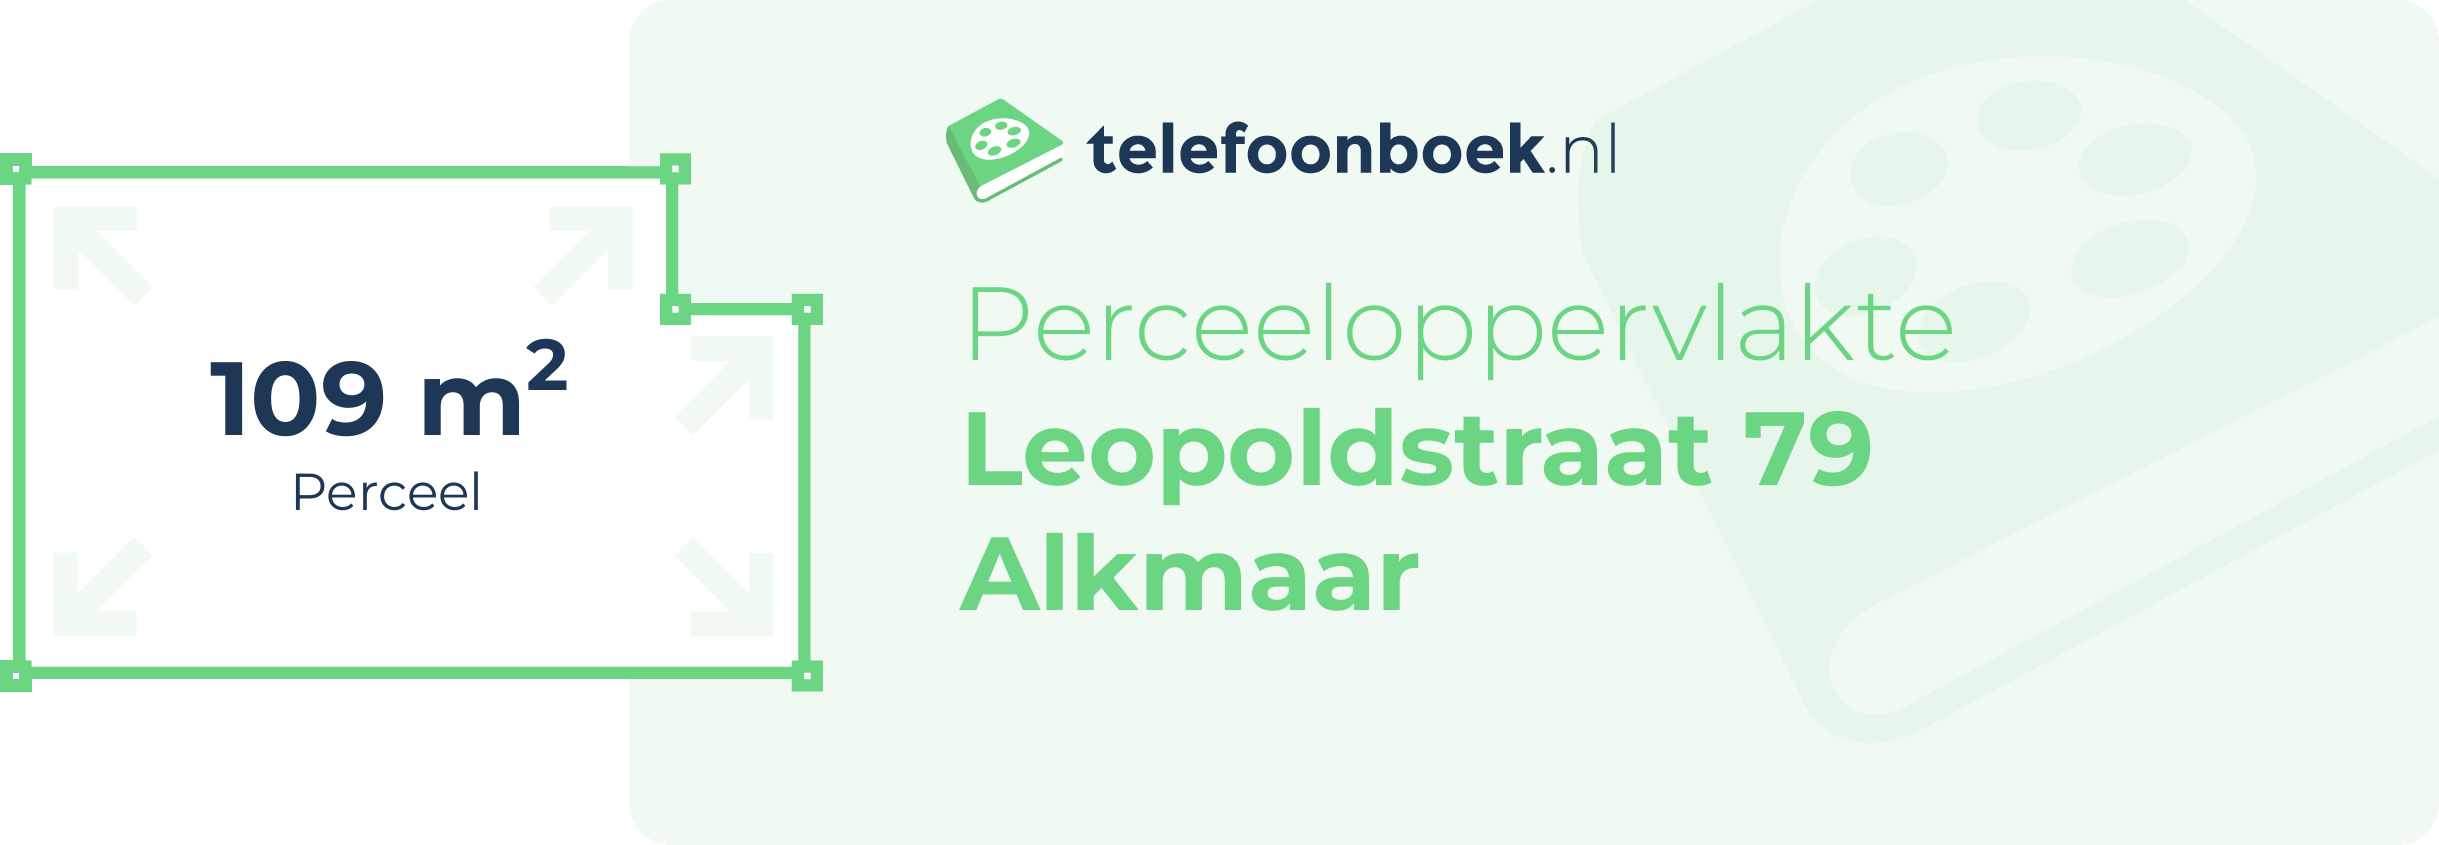 Perceeloppervlakte Leopoldstraat 79 Alkmaar